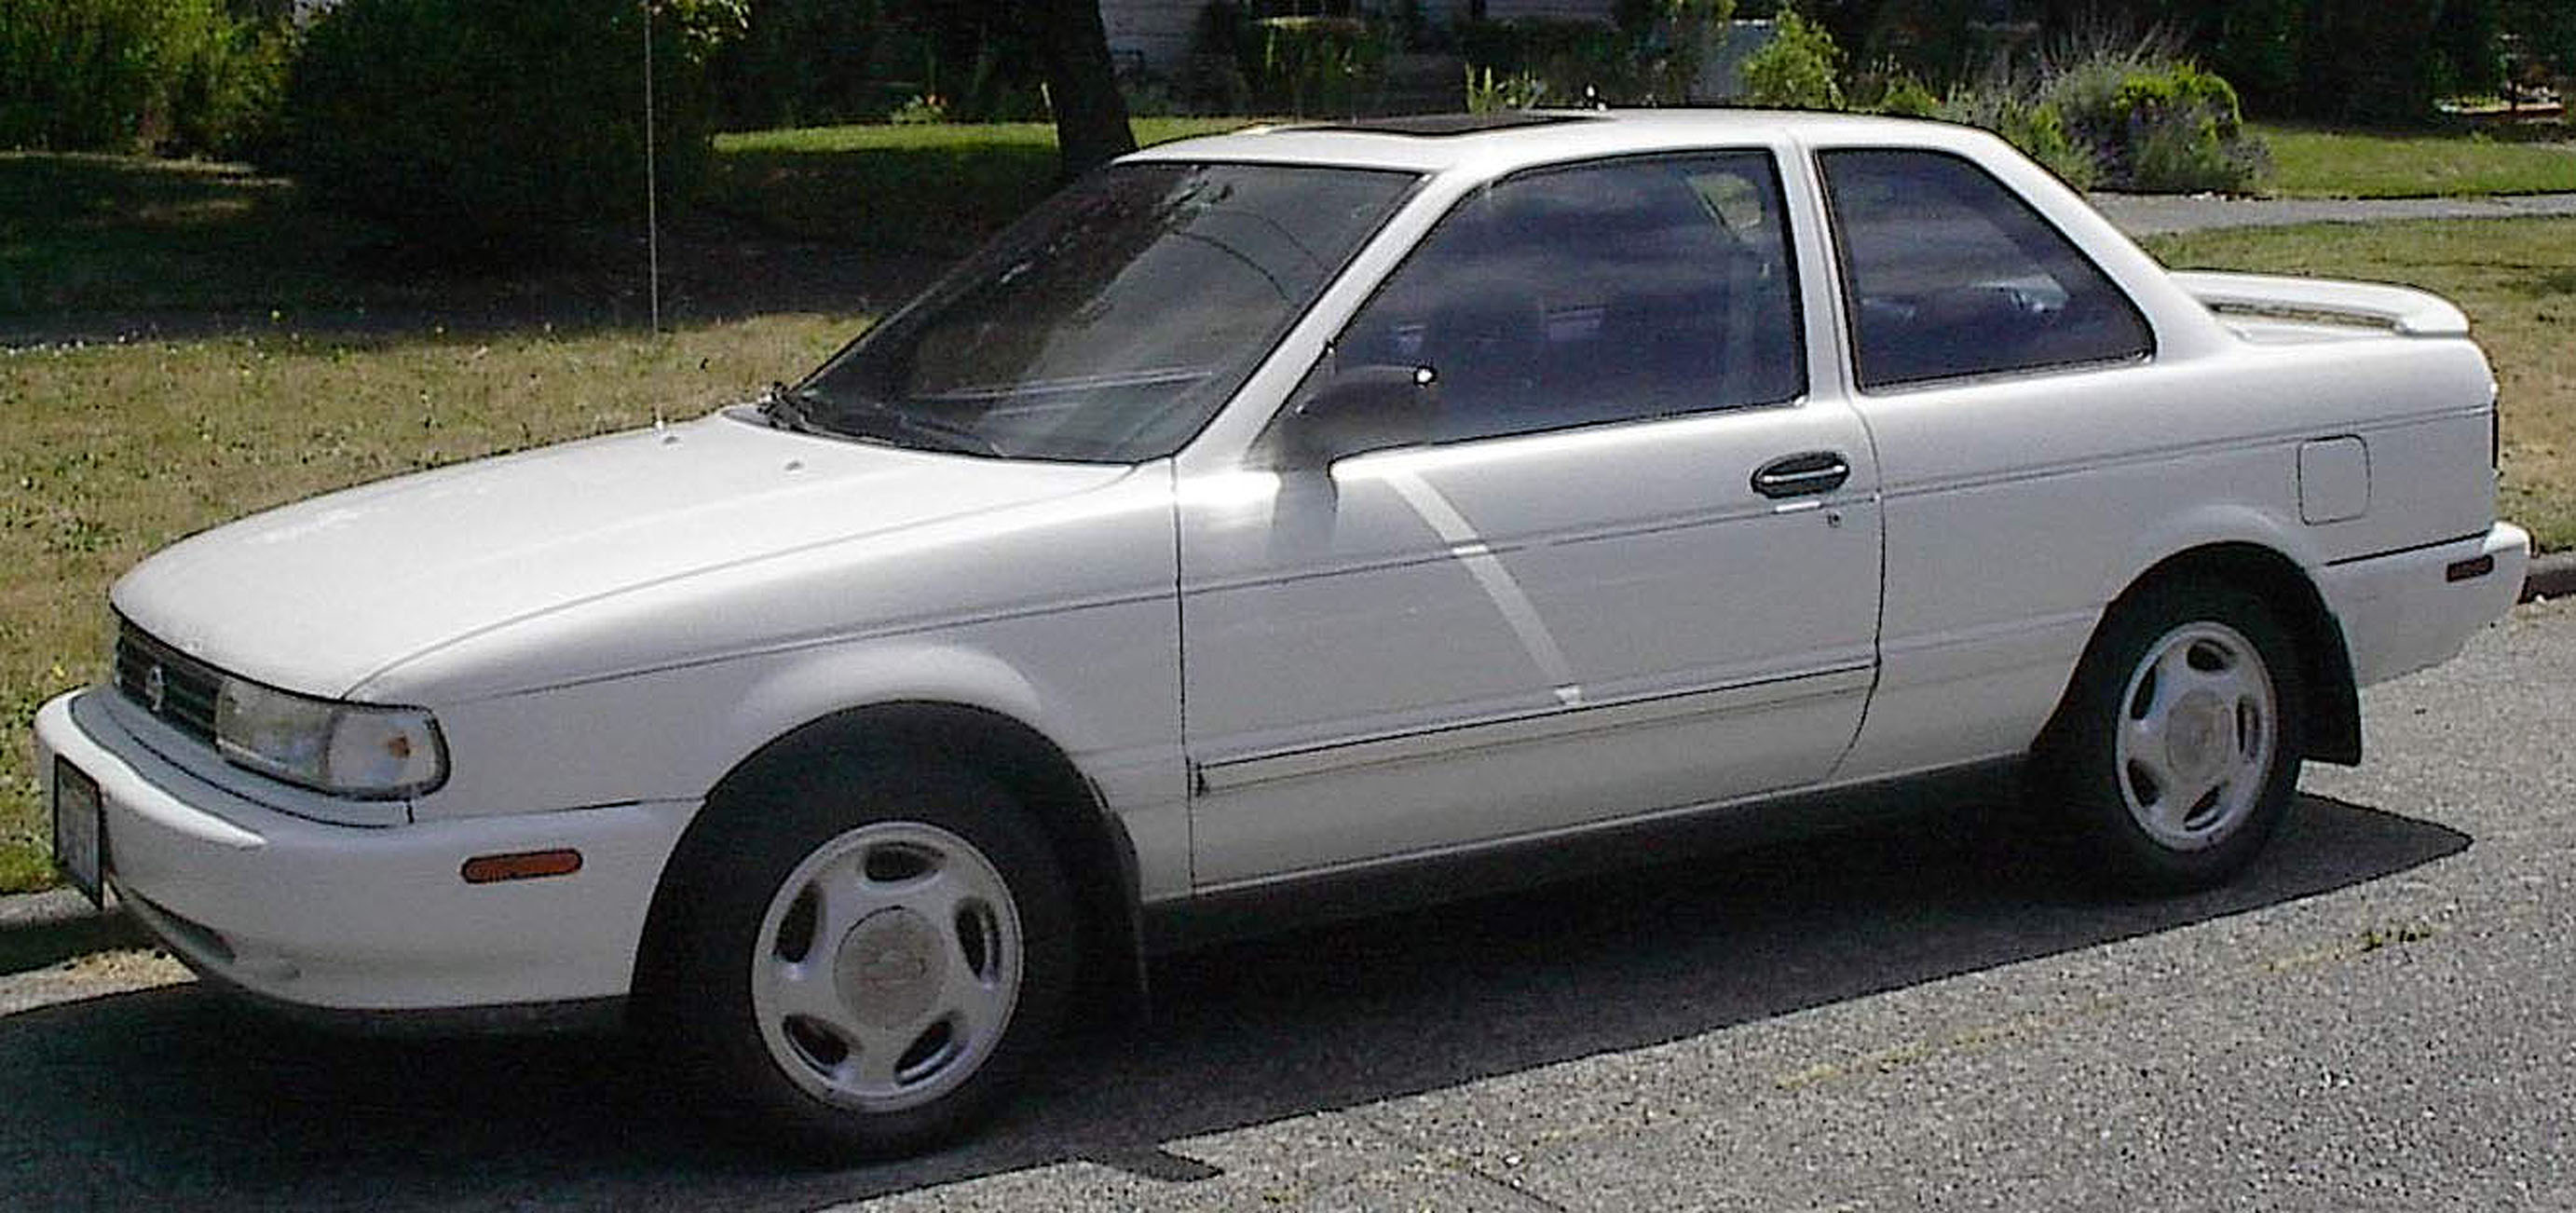 826, Nissan Sentra XE